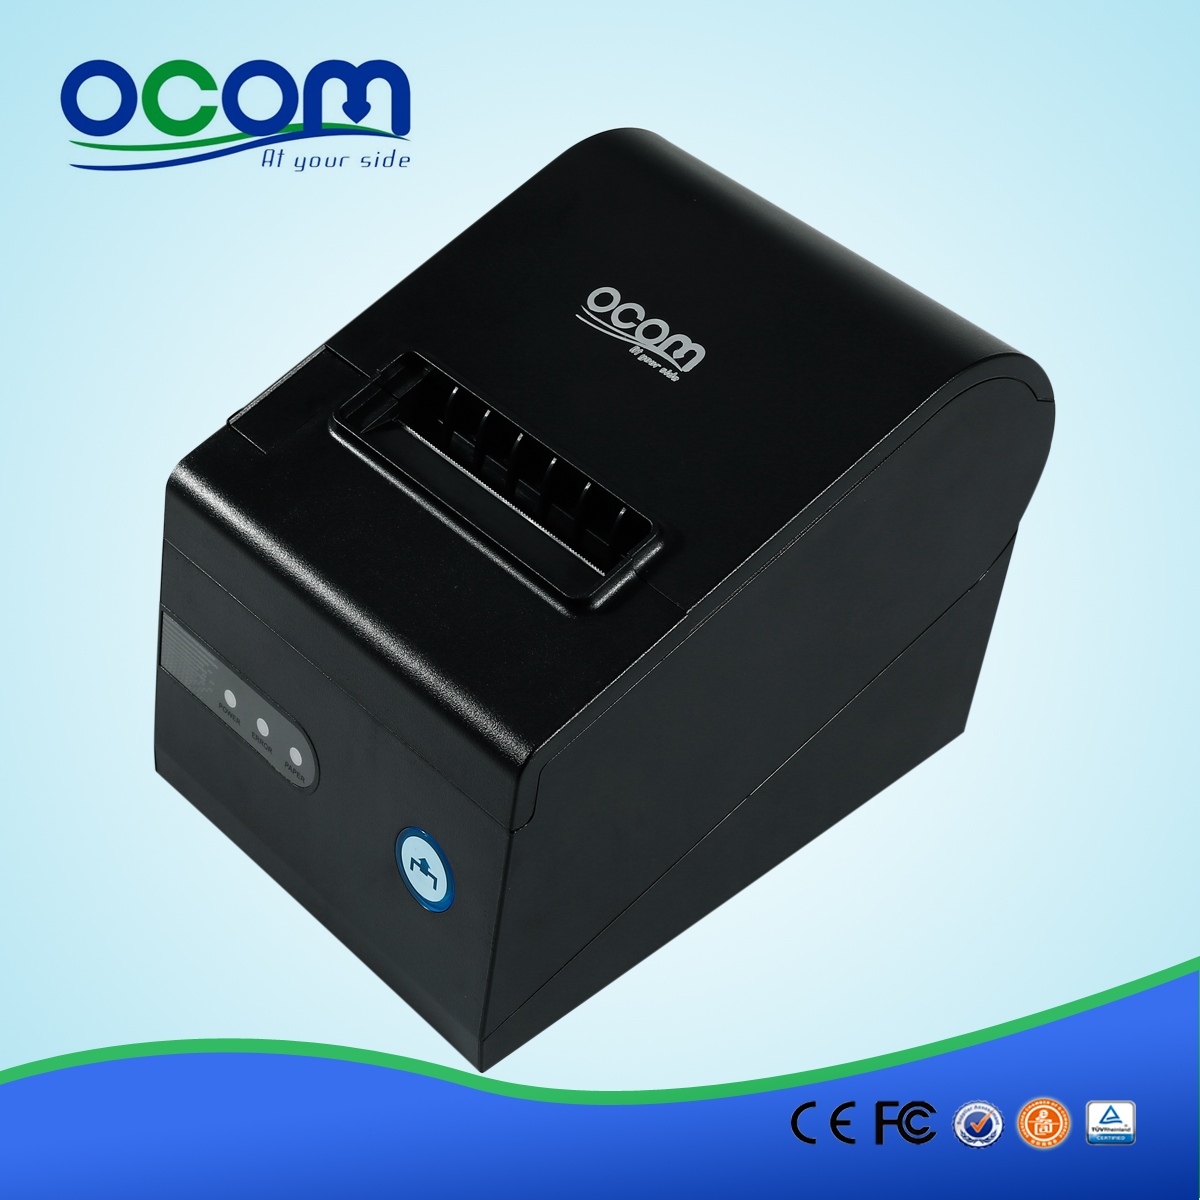 OCPP-804 de bureau imprimante ticket thermique avec USB Serial Port Parallèle